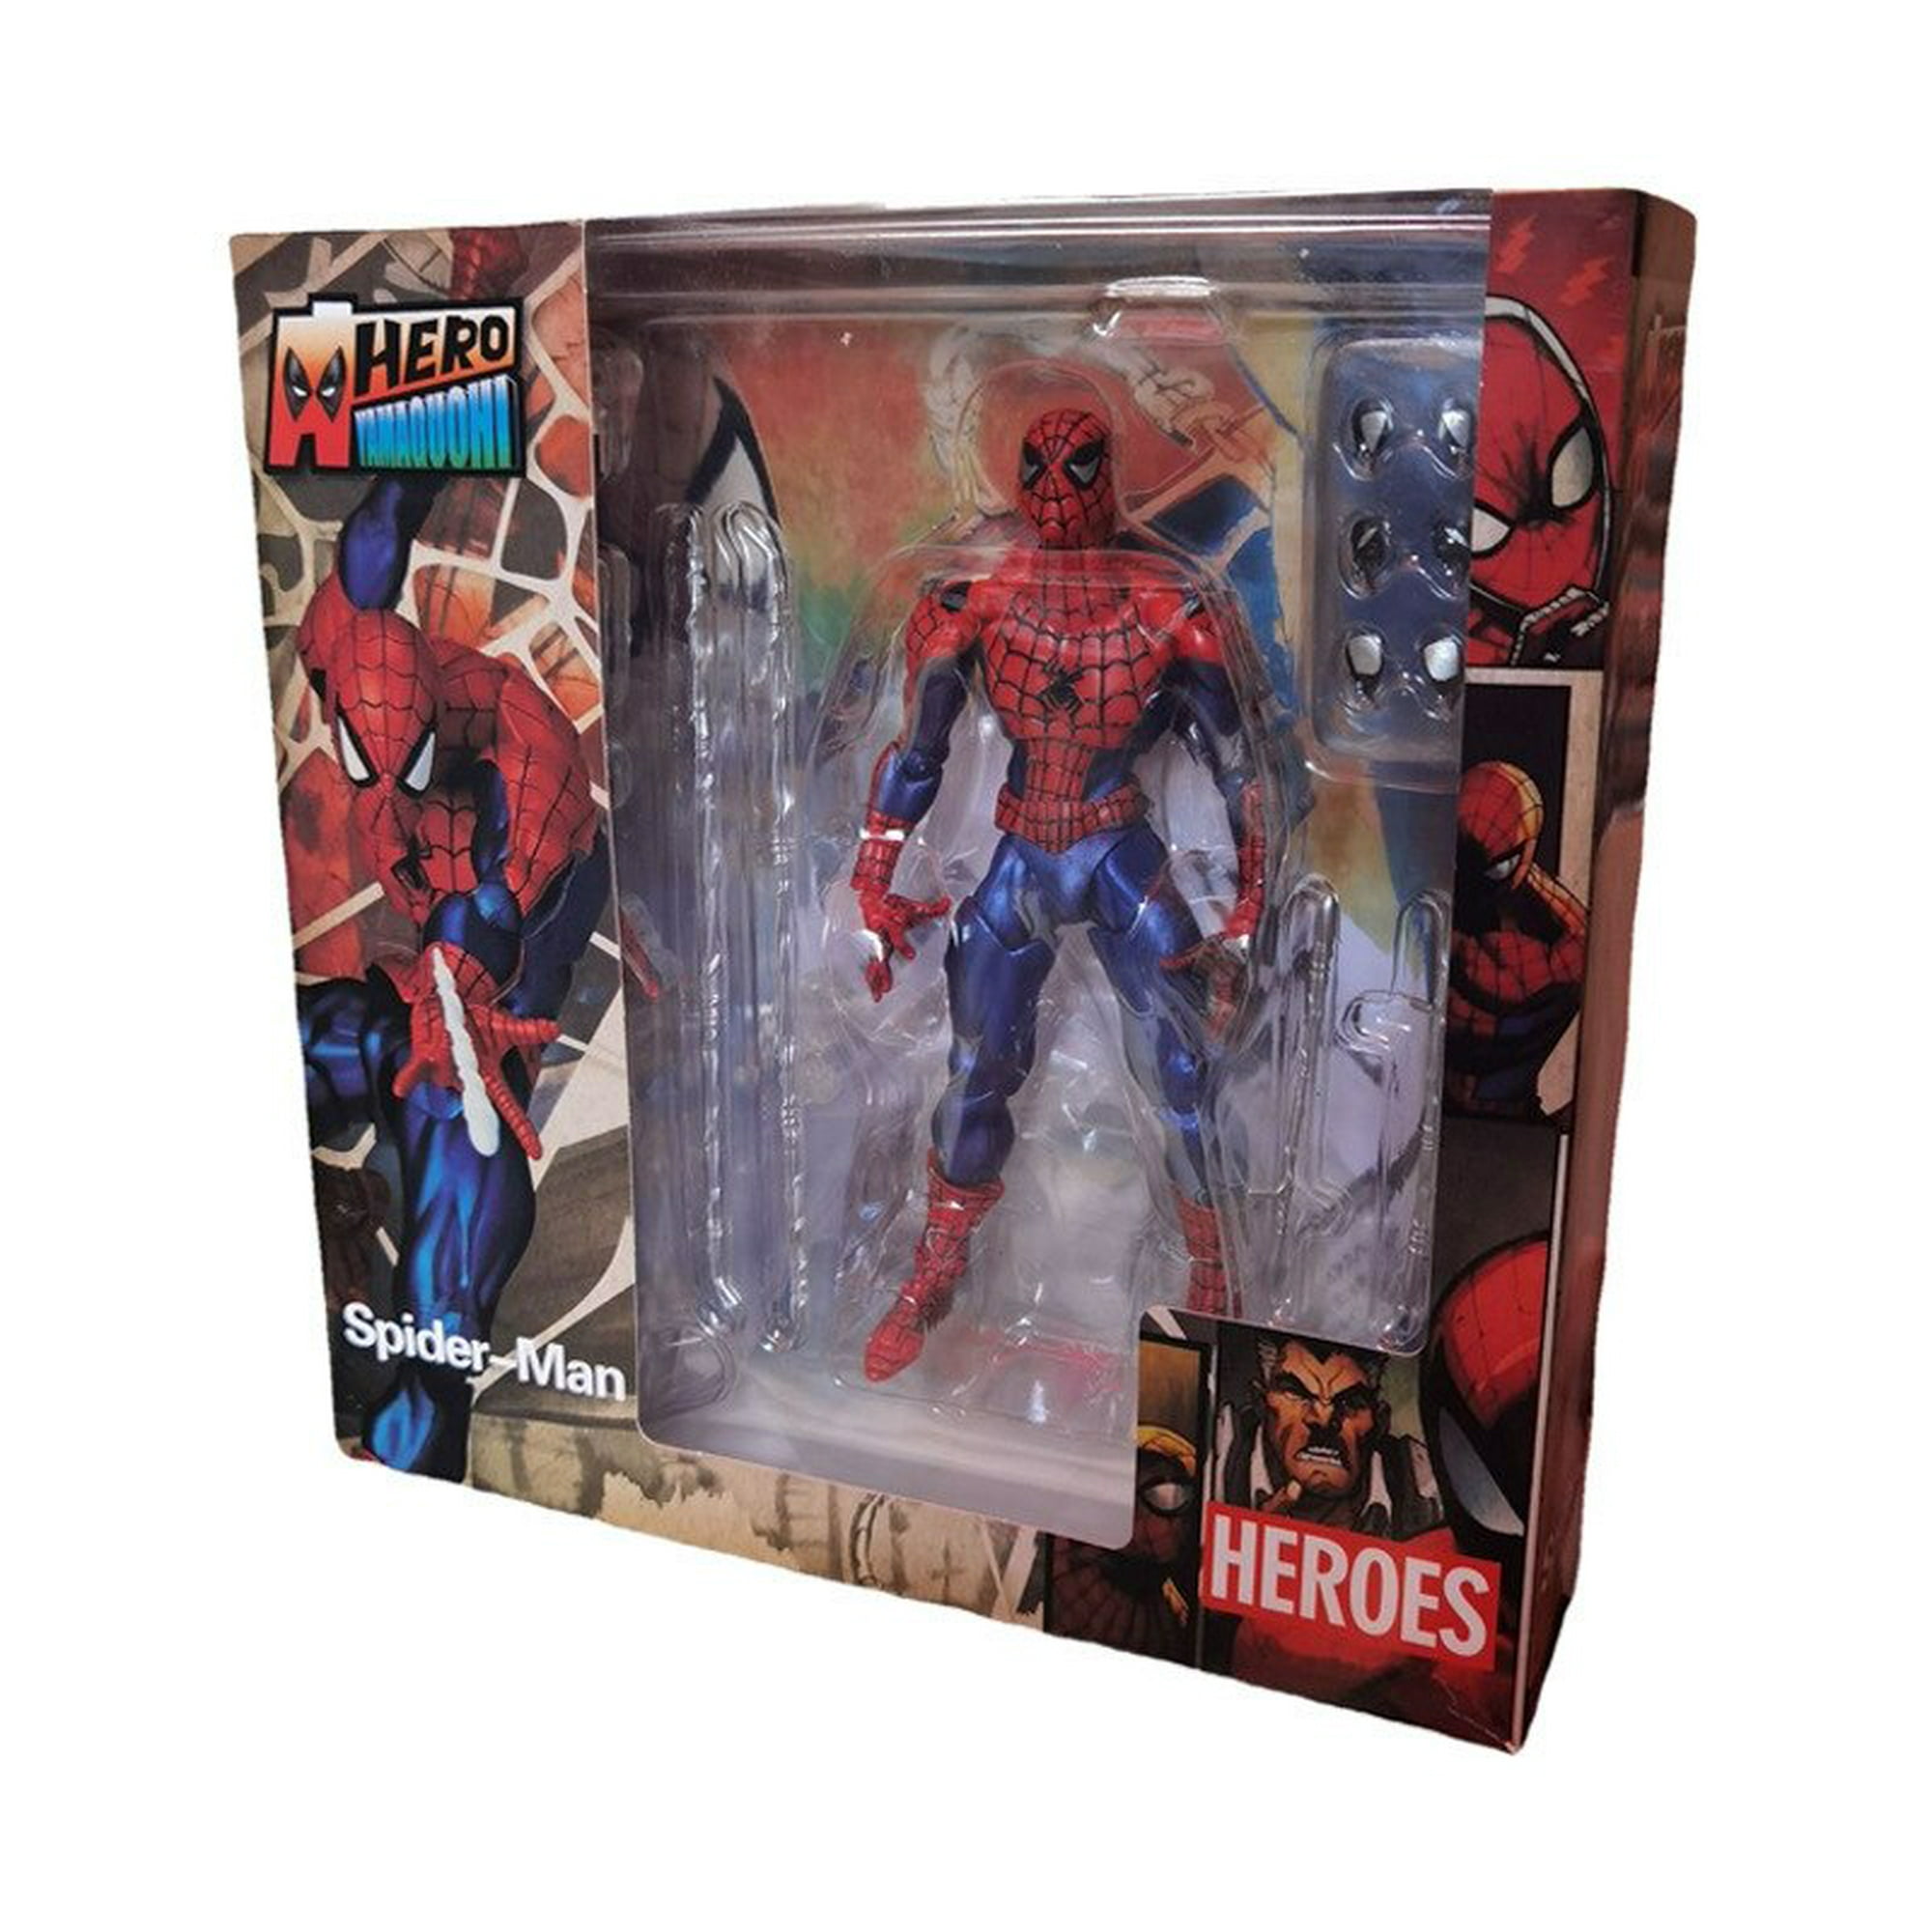 Marvel-figura de acción de Spiderman para niños, modelo de juguete para  niños, regalo de cumpleaños y Navidad, el increíble Spider-Man, MAF 075  Fivean unisex